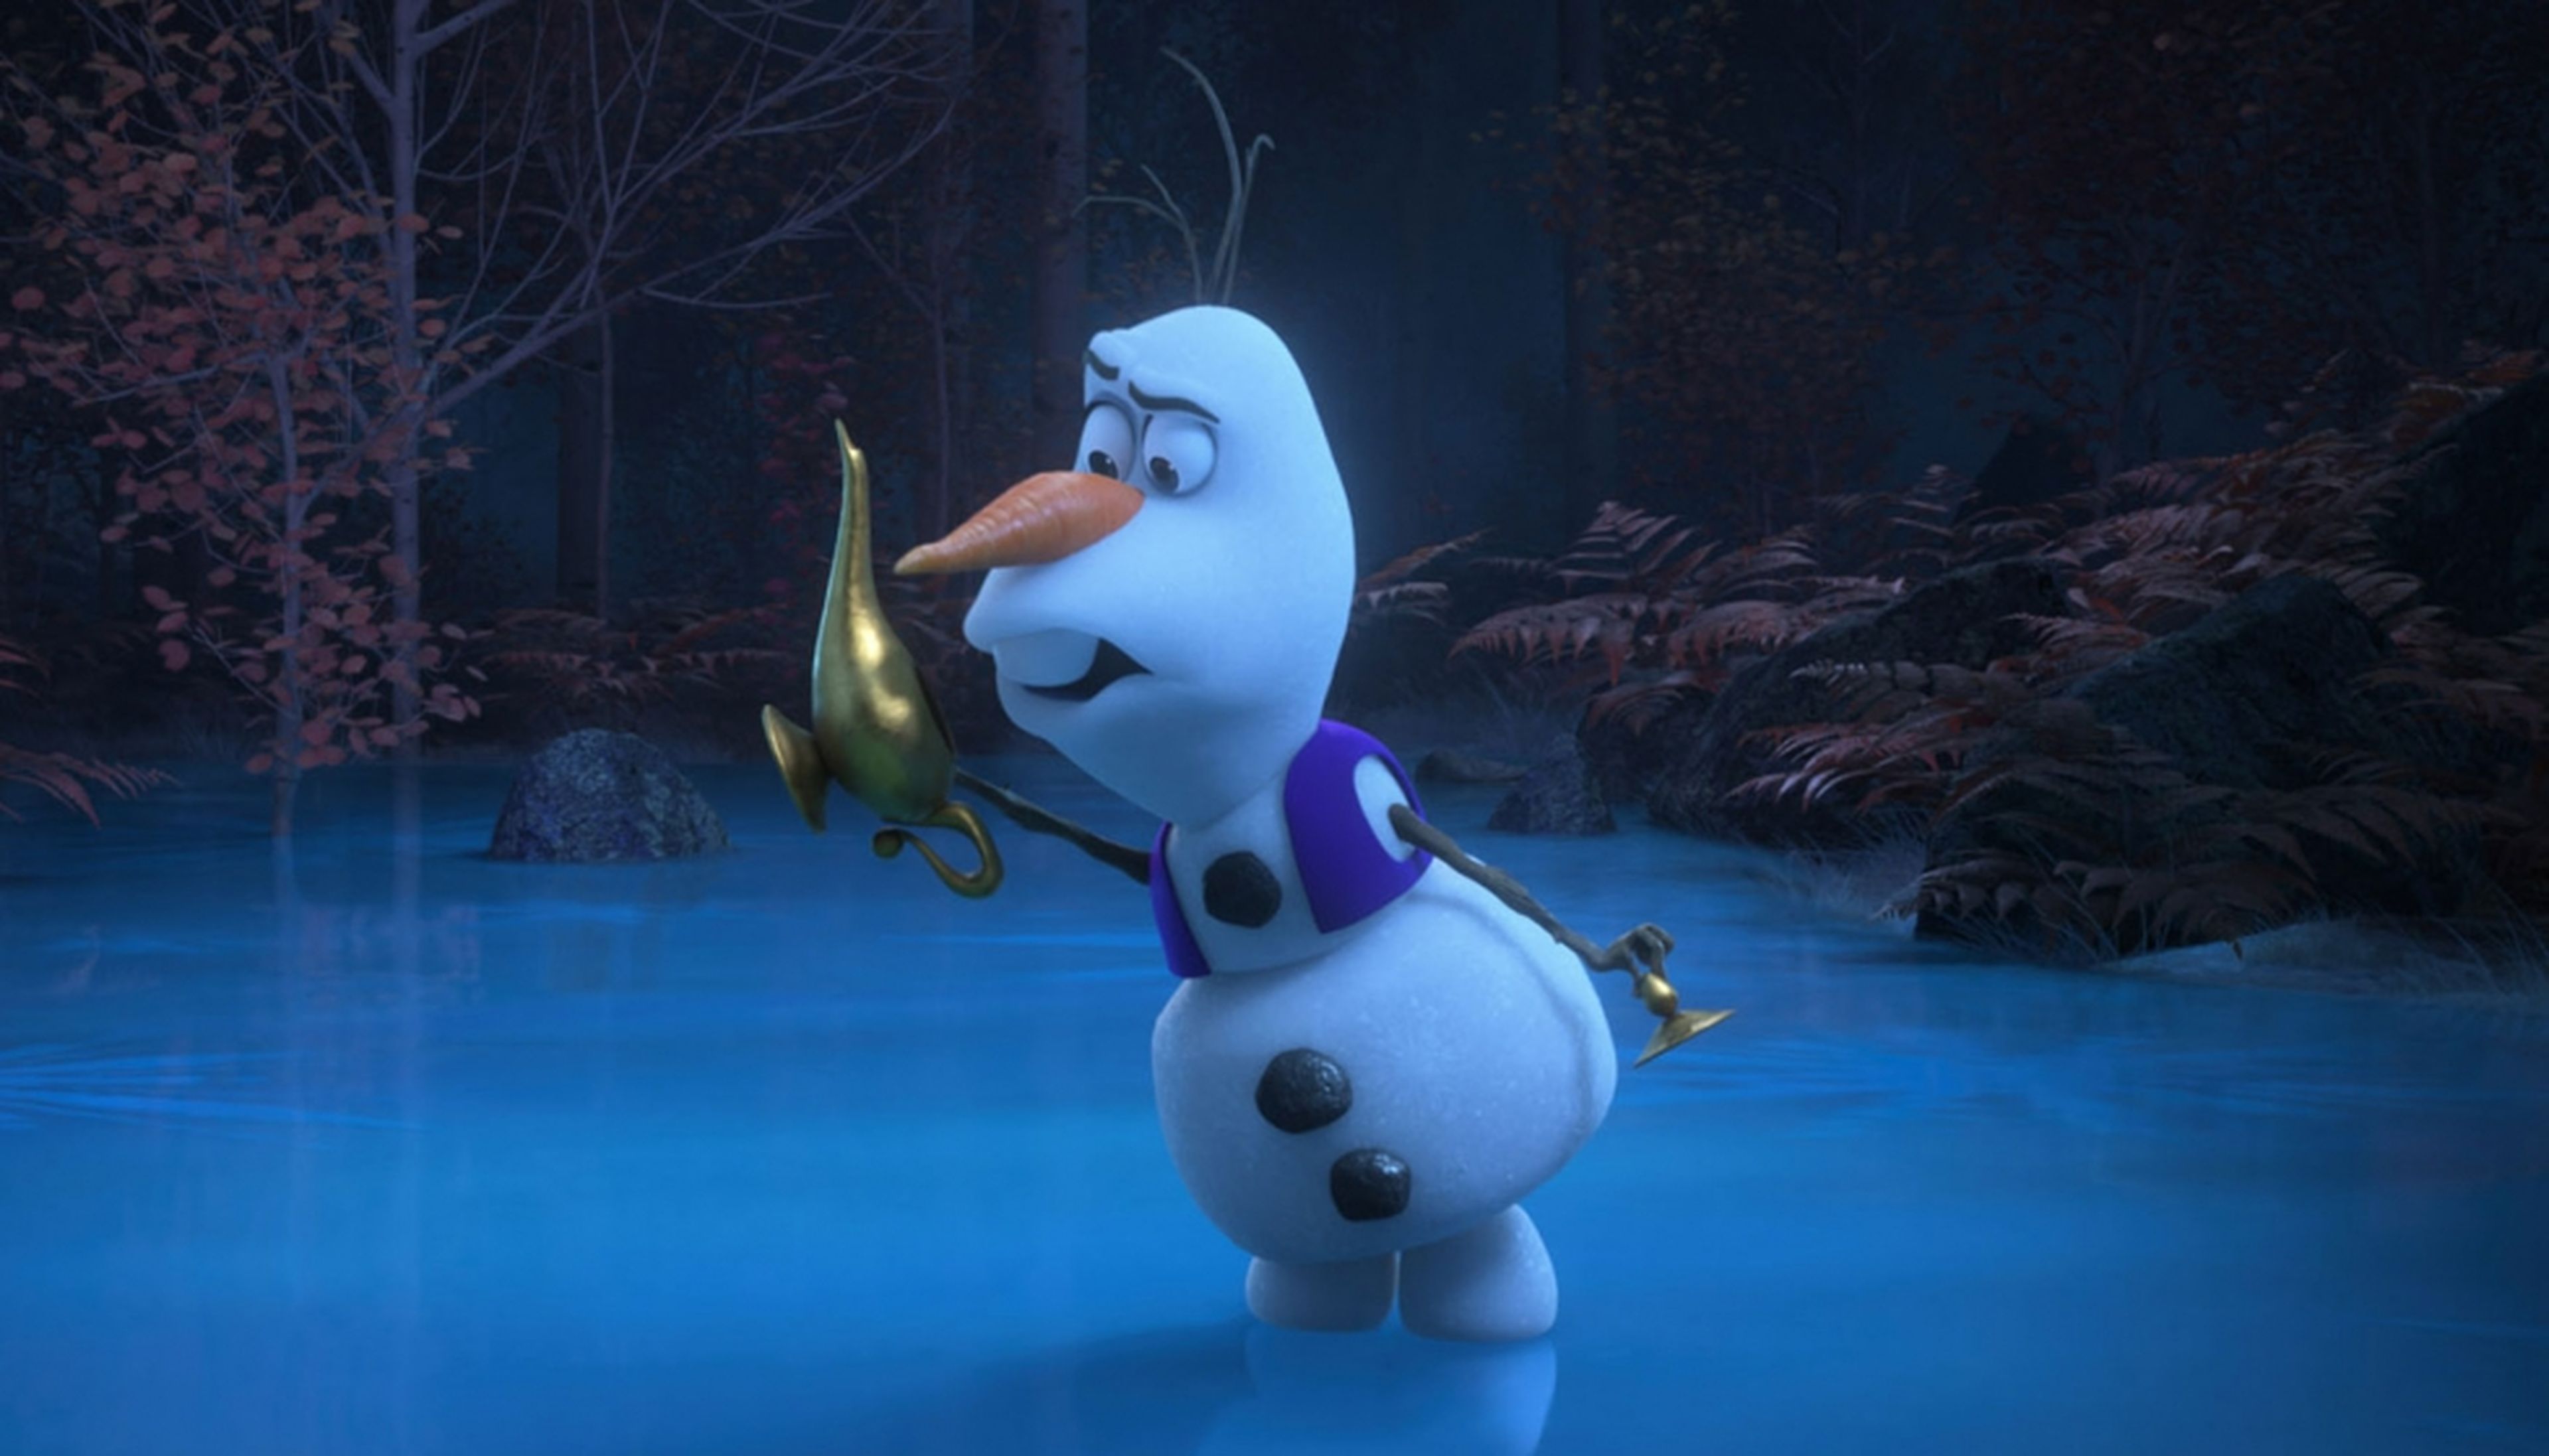 Olaf presenta